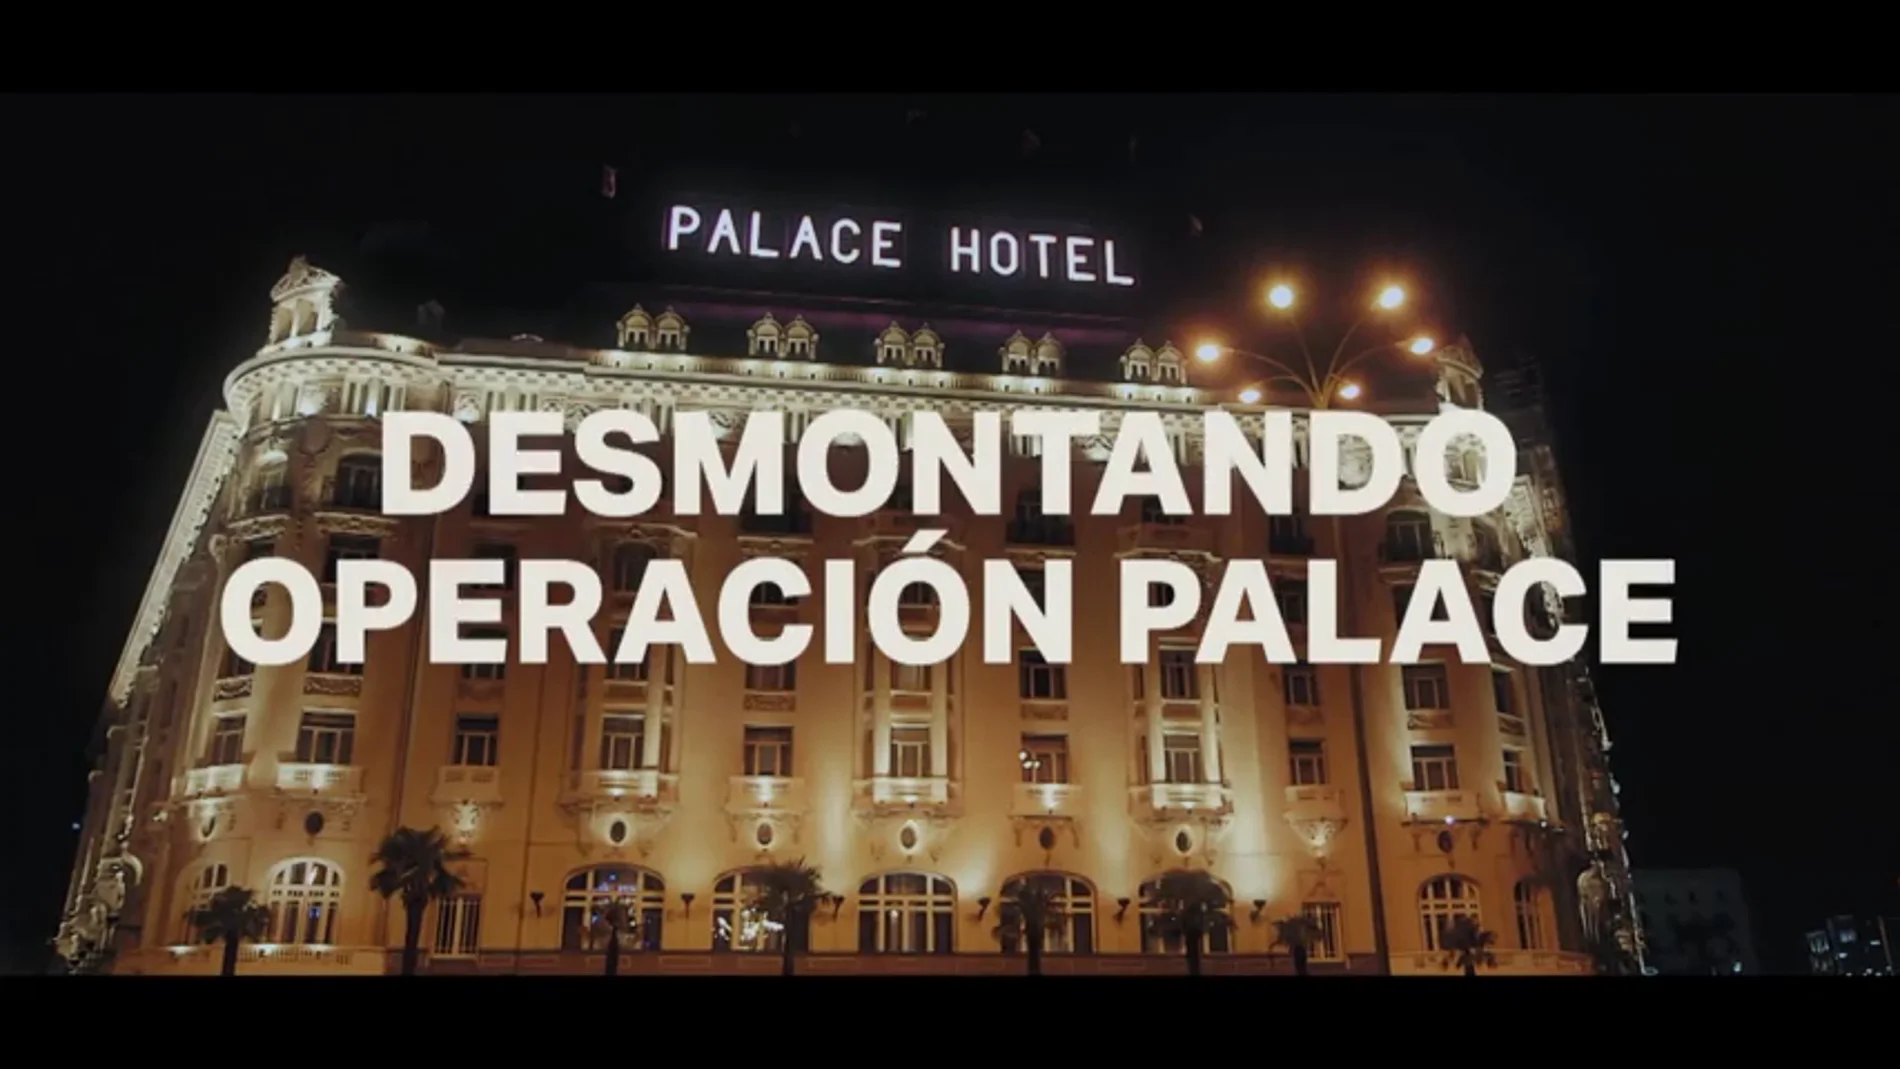 Descubre la verdad de una mentira con estos 10 vídeos de Salvados desmontando Operación Palace en su quinto aniversario